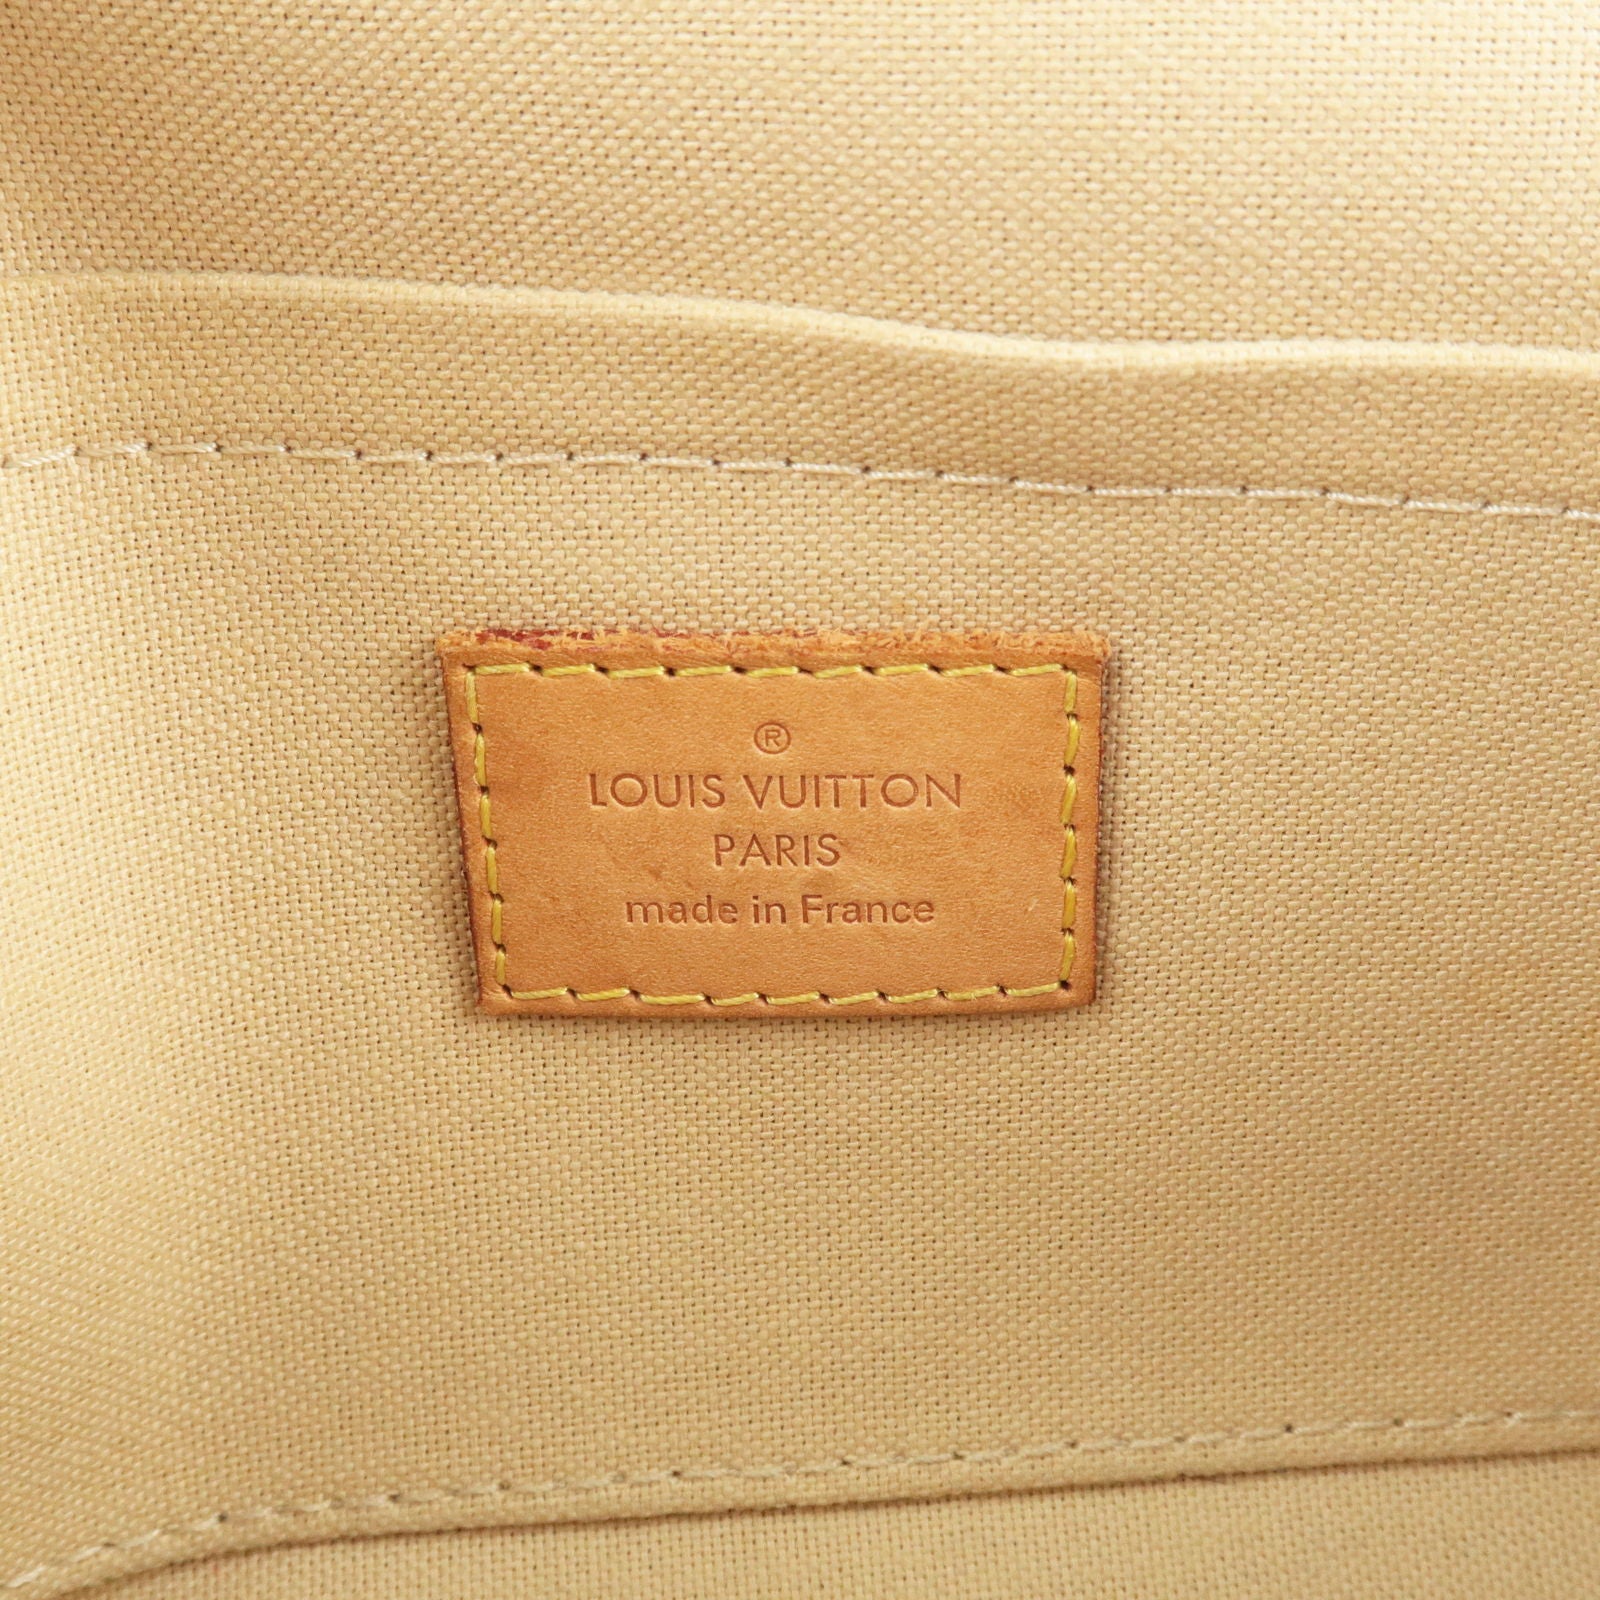 Handbags Louis Vuitton Louis Vuitton Damier Azur Favorit PM Shoulder Bag 2way N41277 LV Auth 49499